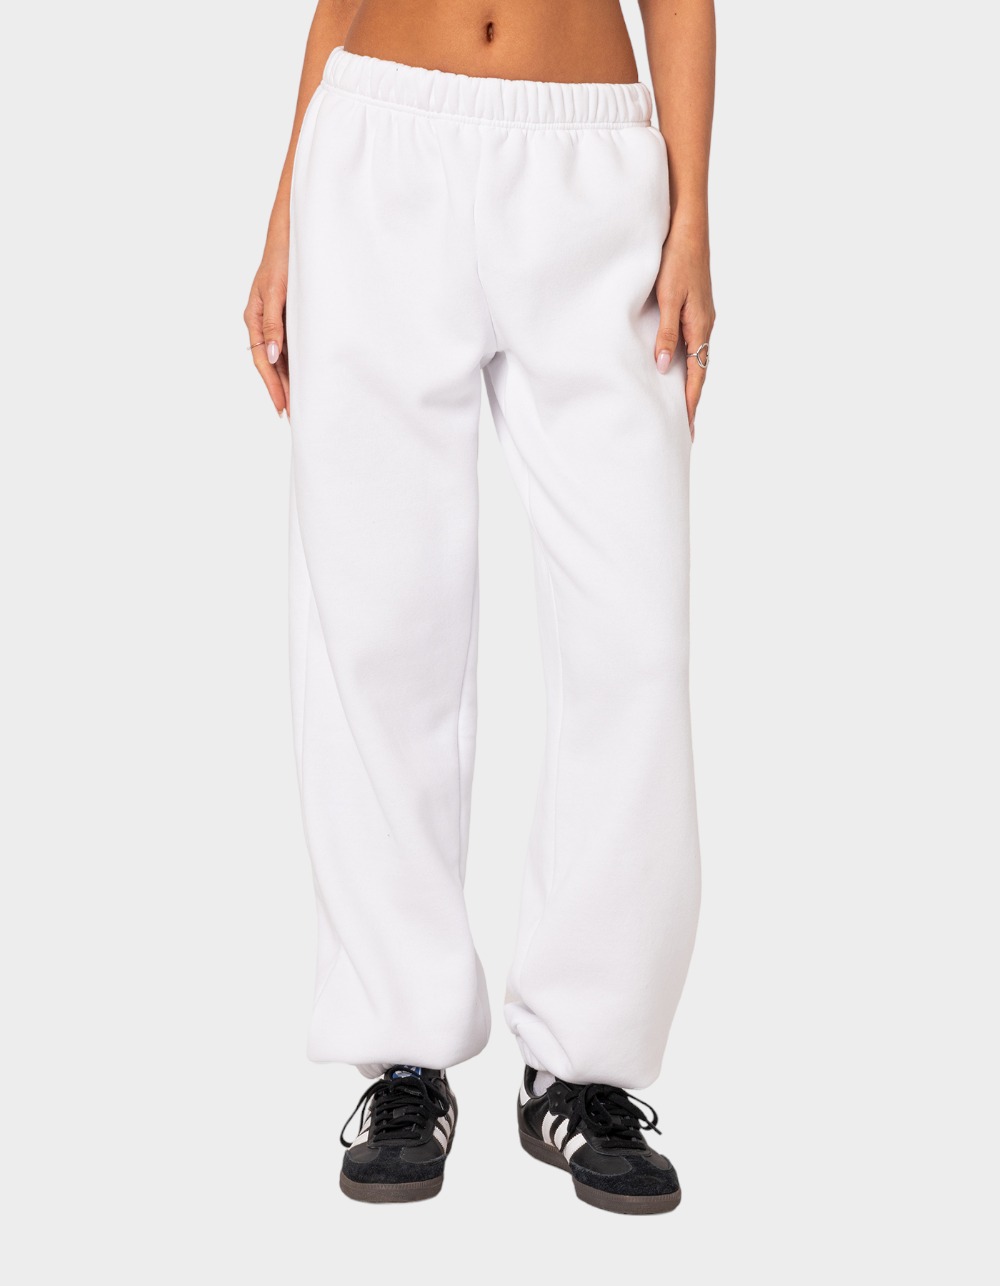 EDIKTED Clark Oversized Sweatpants - WHITE | Tillys